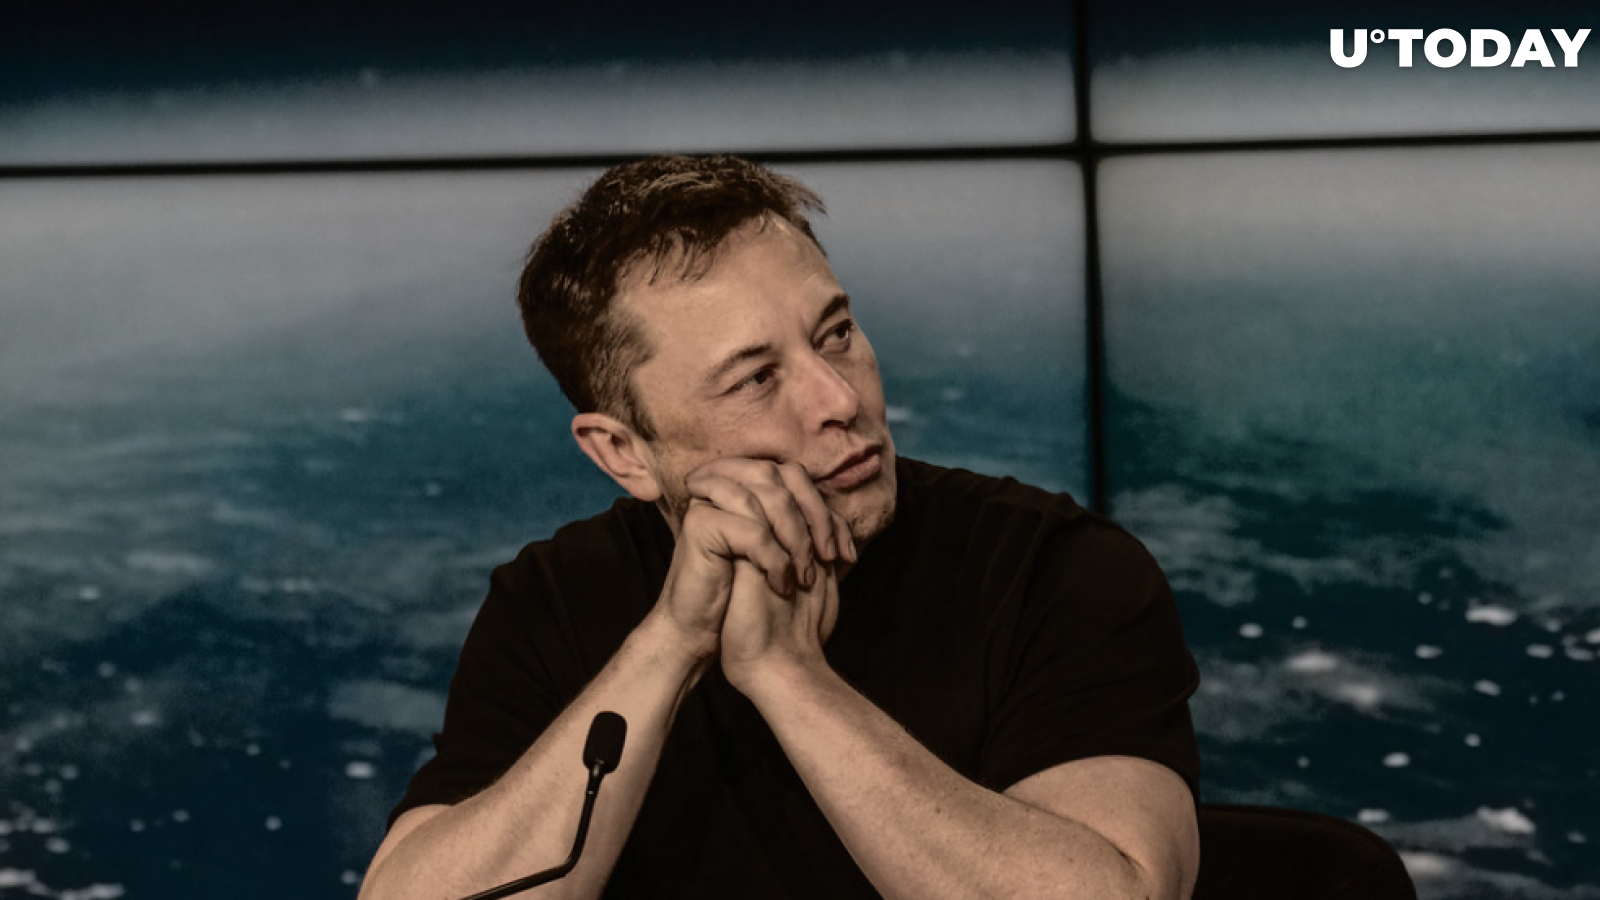  Elon Musk Ridicules Bitcoin Maxis, Trolls "Bicurious" Jack Dorsey